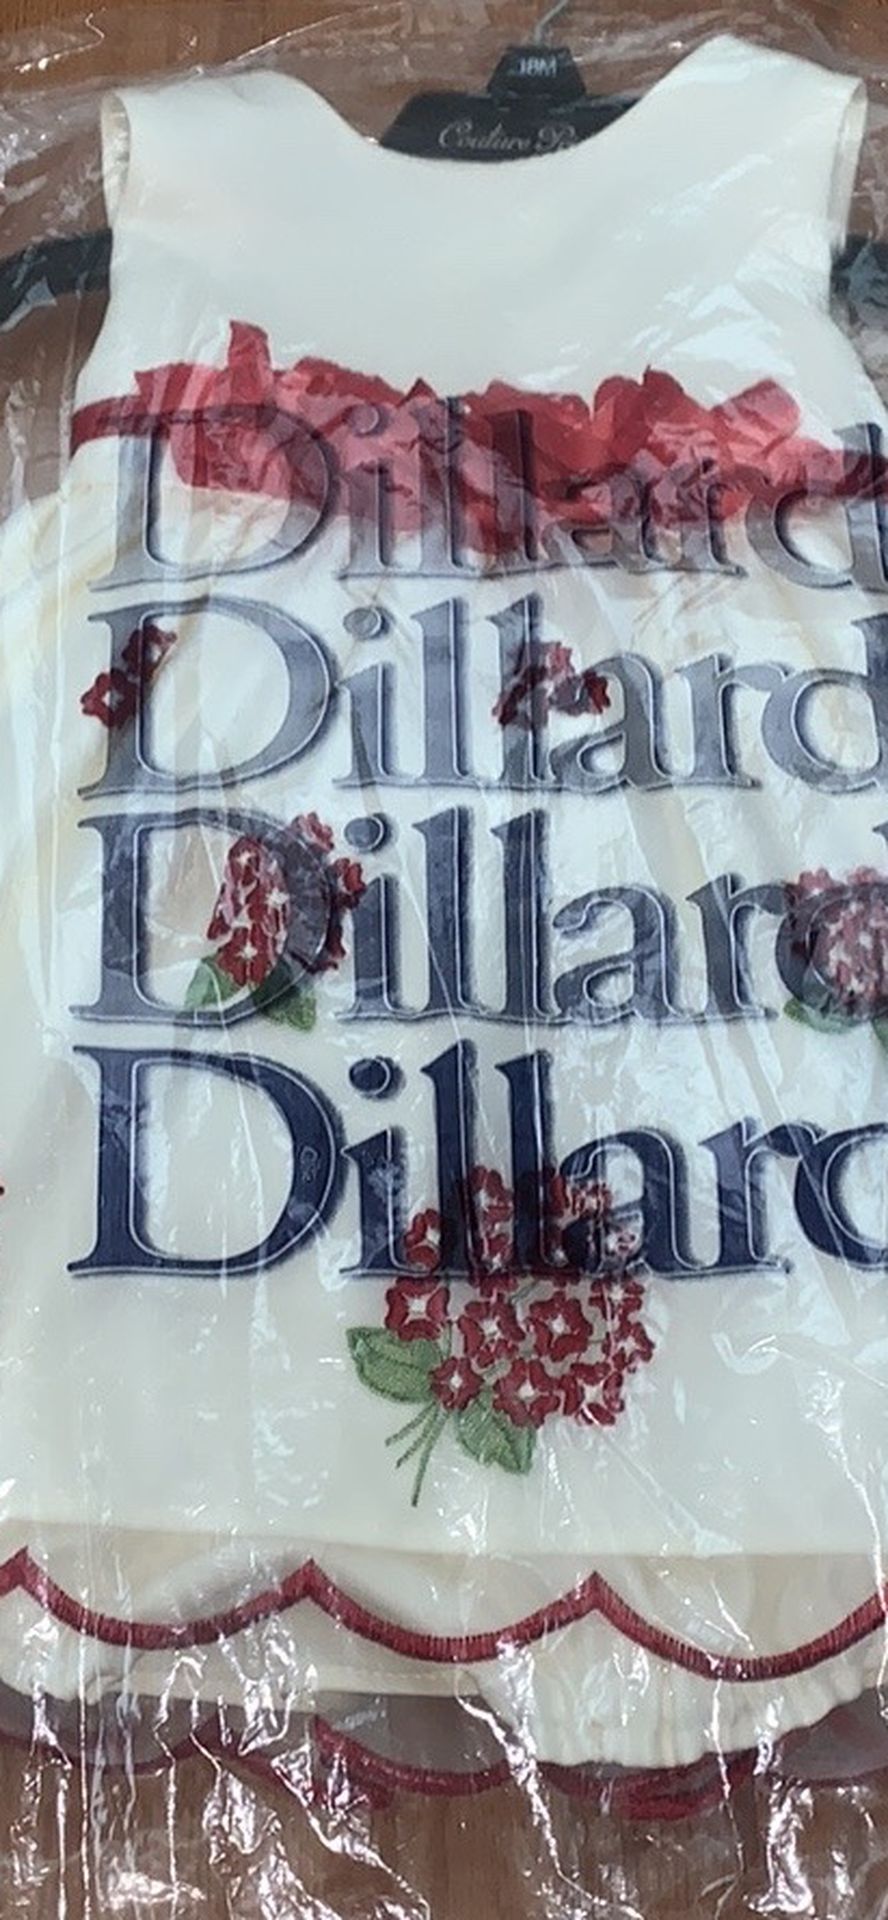 Dillard’s Couture Princess Dress